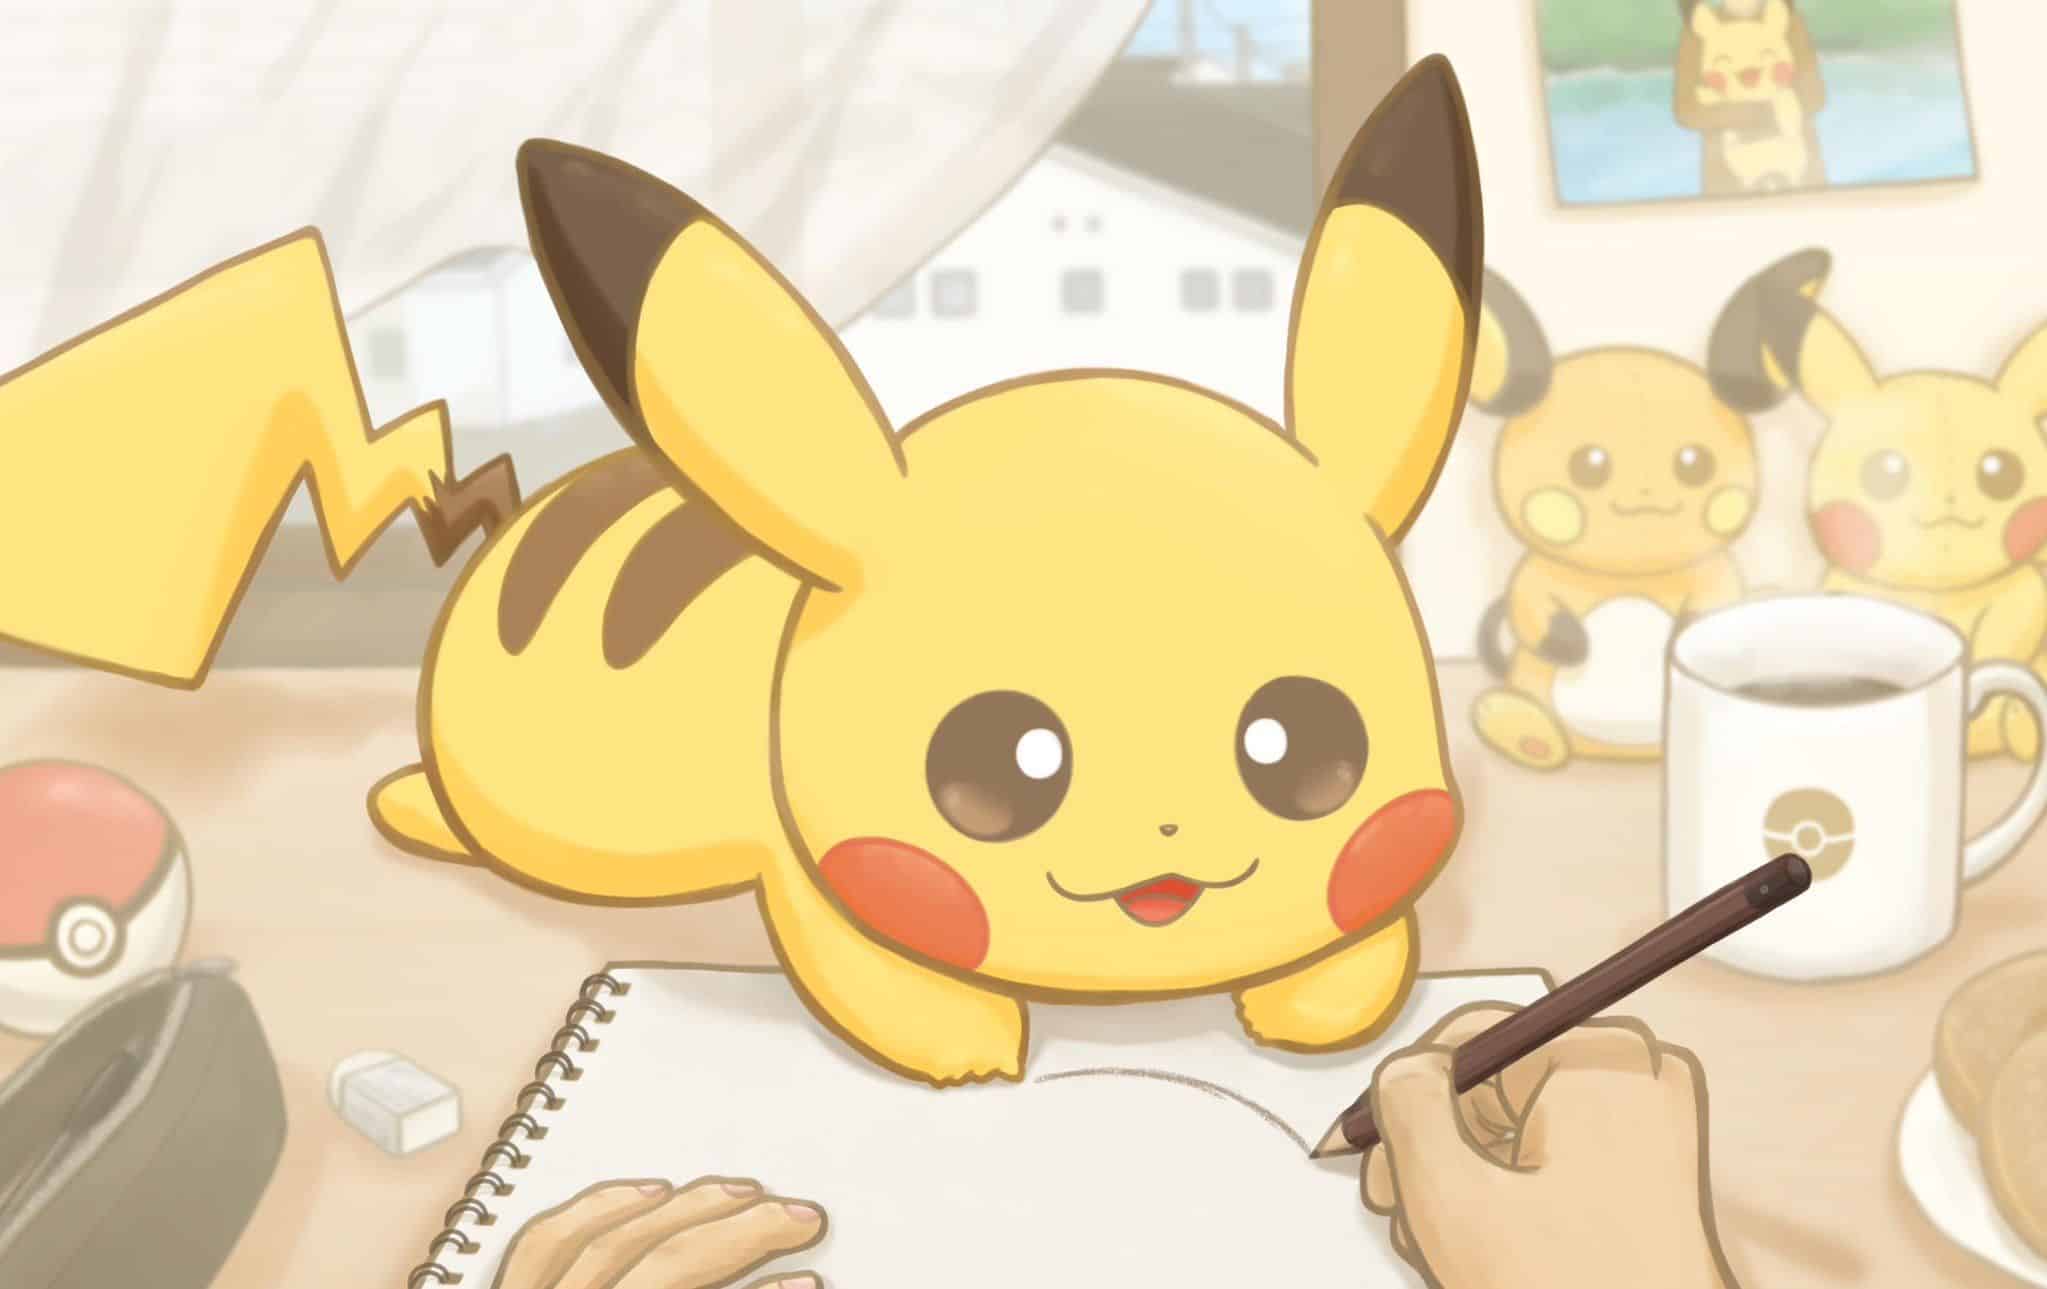 Drawing Pikachu Chibi Kiss  Vẽ 2 con pikachu thơm má đơn giản   HUYỀN  MERRY  YouTube